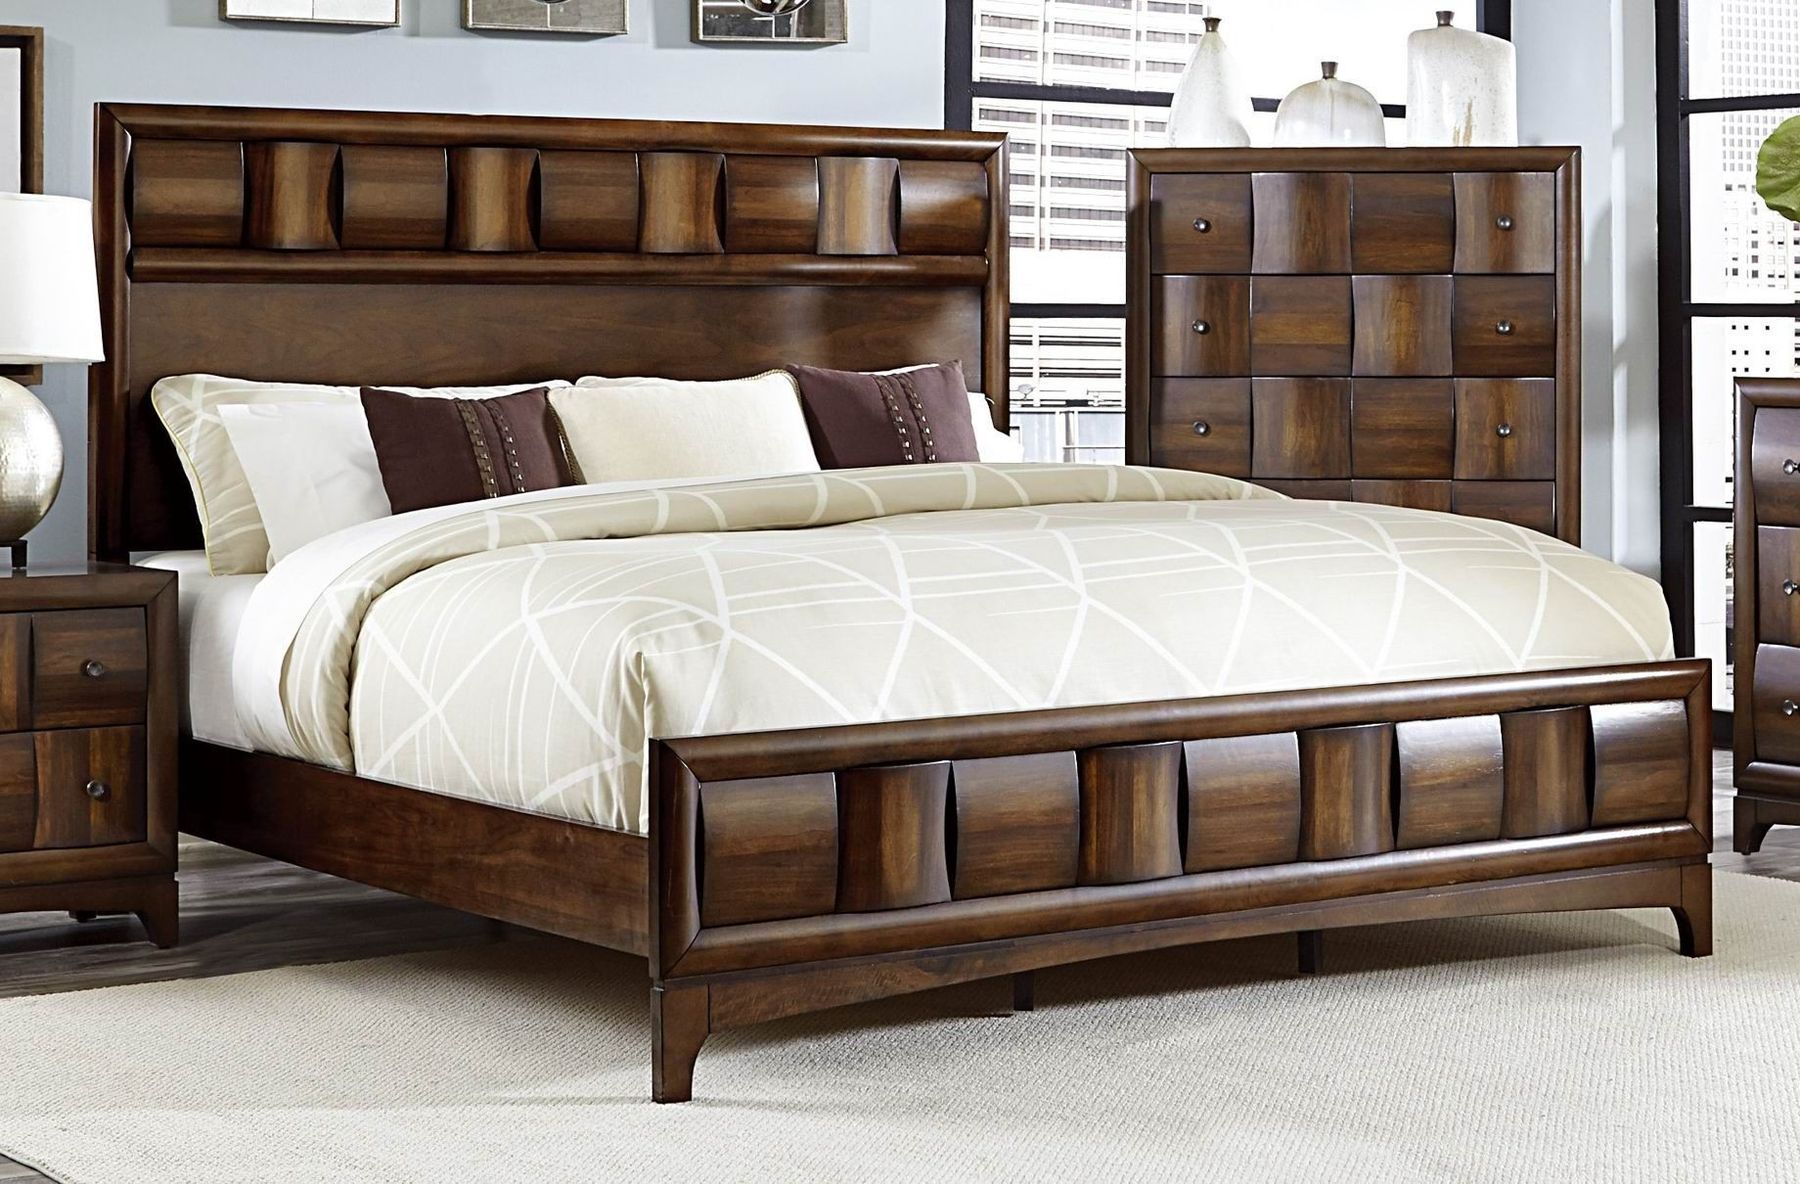 Giường ngủ làm bằng gỗ óc chó kiểu dáng độc đáo